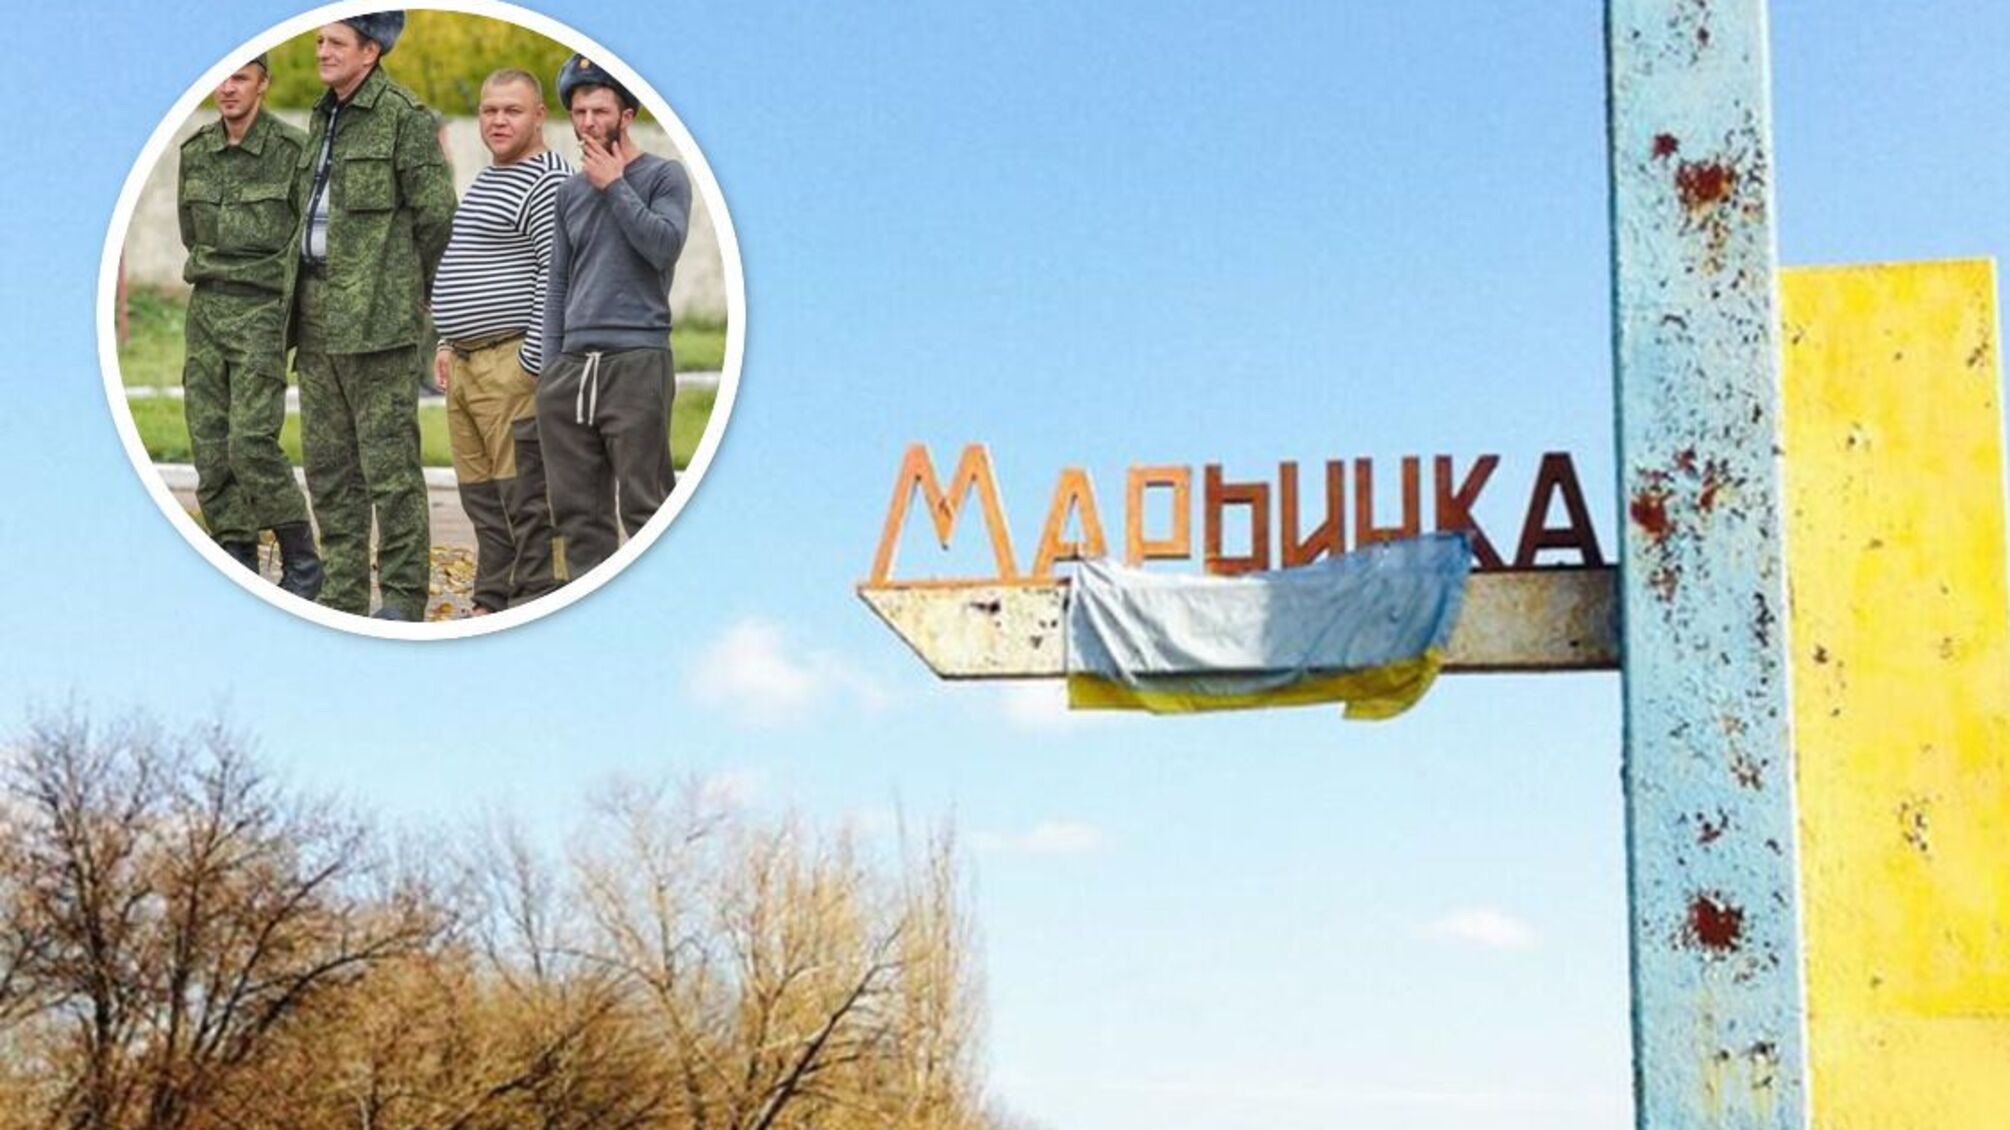 Марьинка - город-спутник Донецка - за 400 дней армия рф продвинулась на 3 км